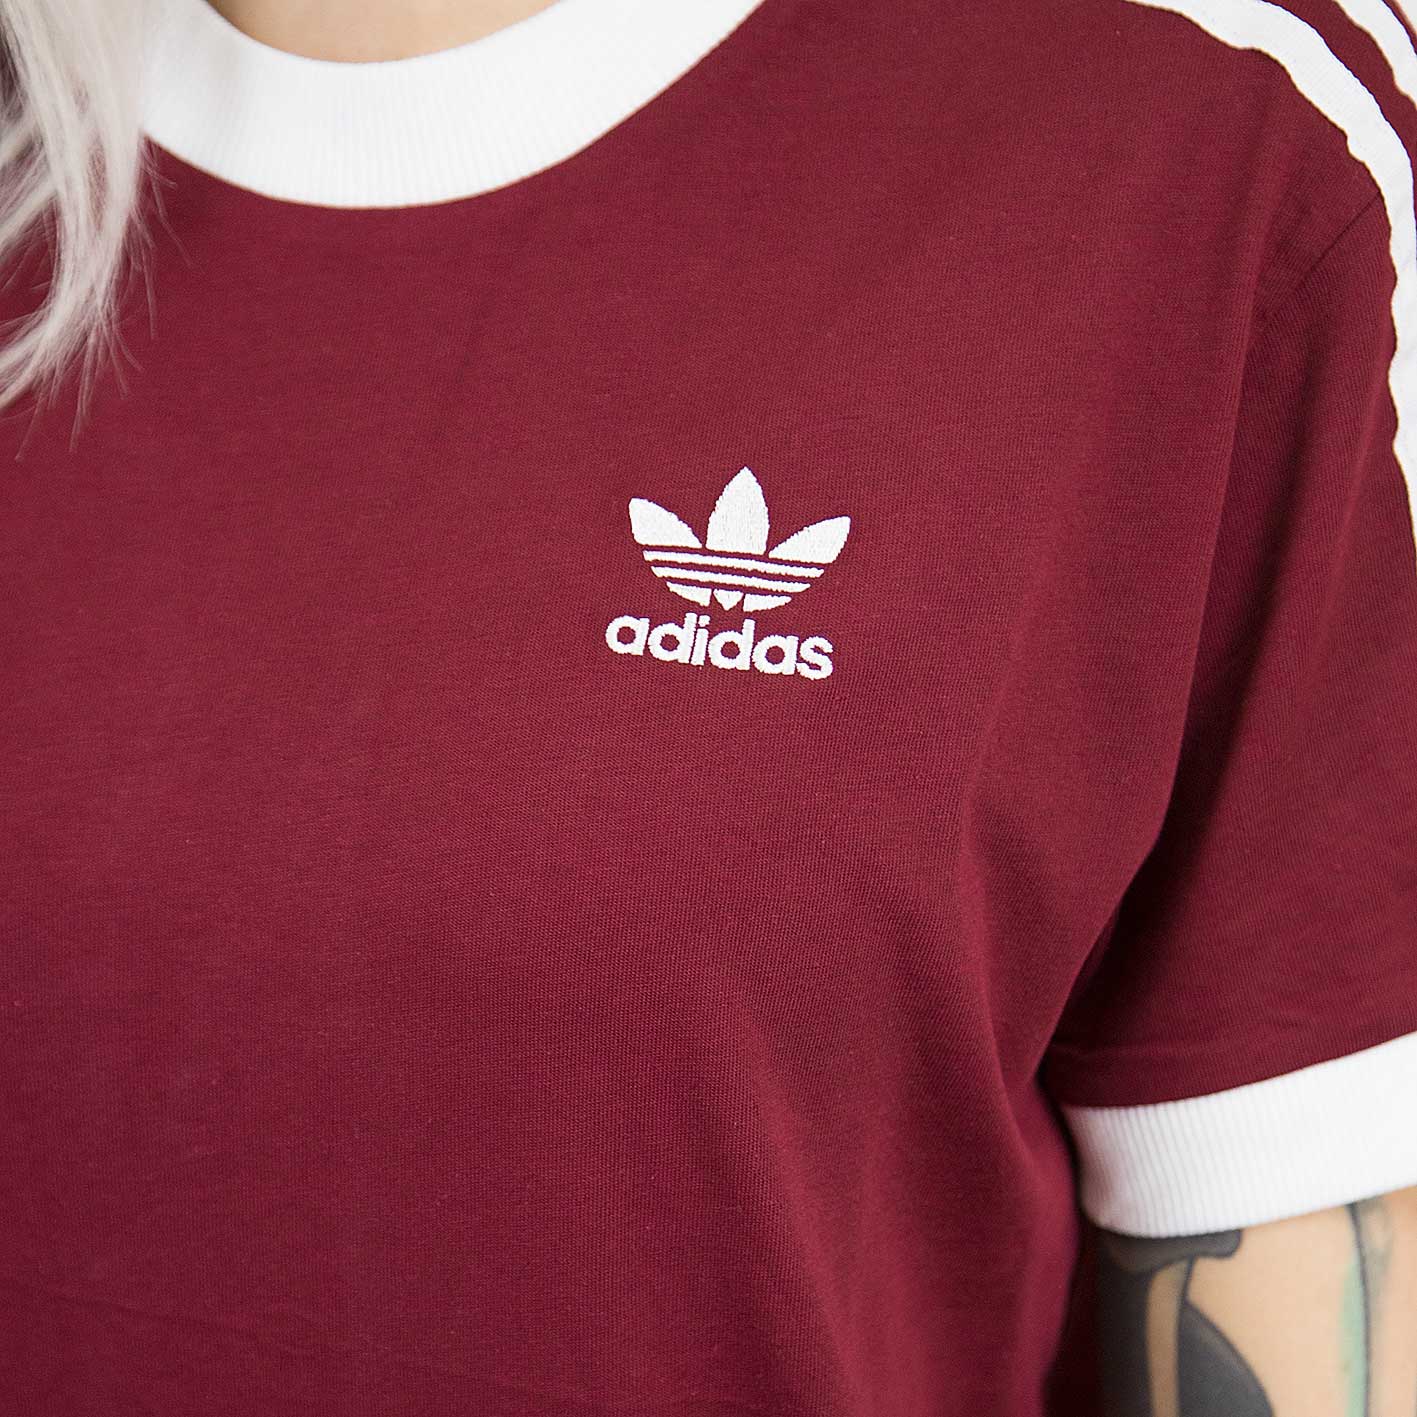 ☆ Adidas Originals Damen T-Shirt 3 Stripes weinrot - hier bestellen!